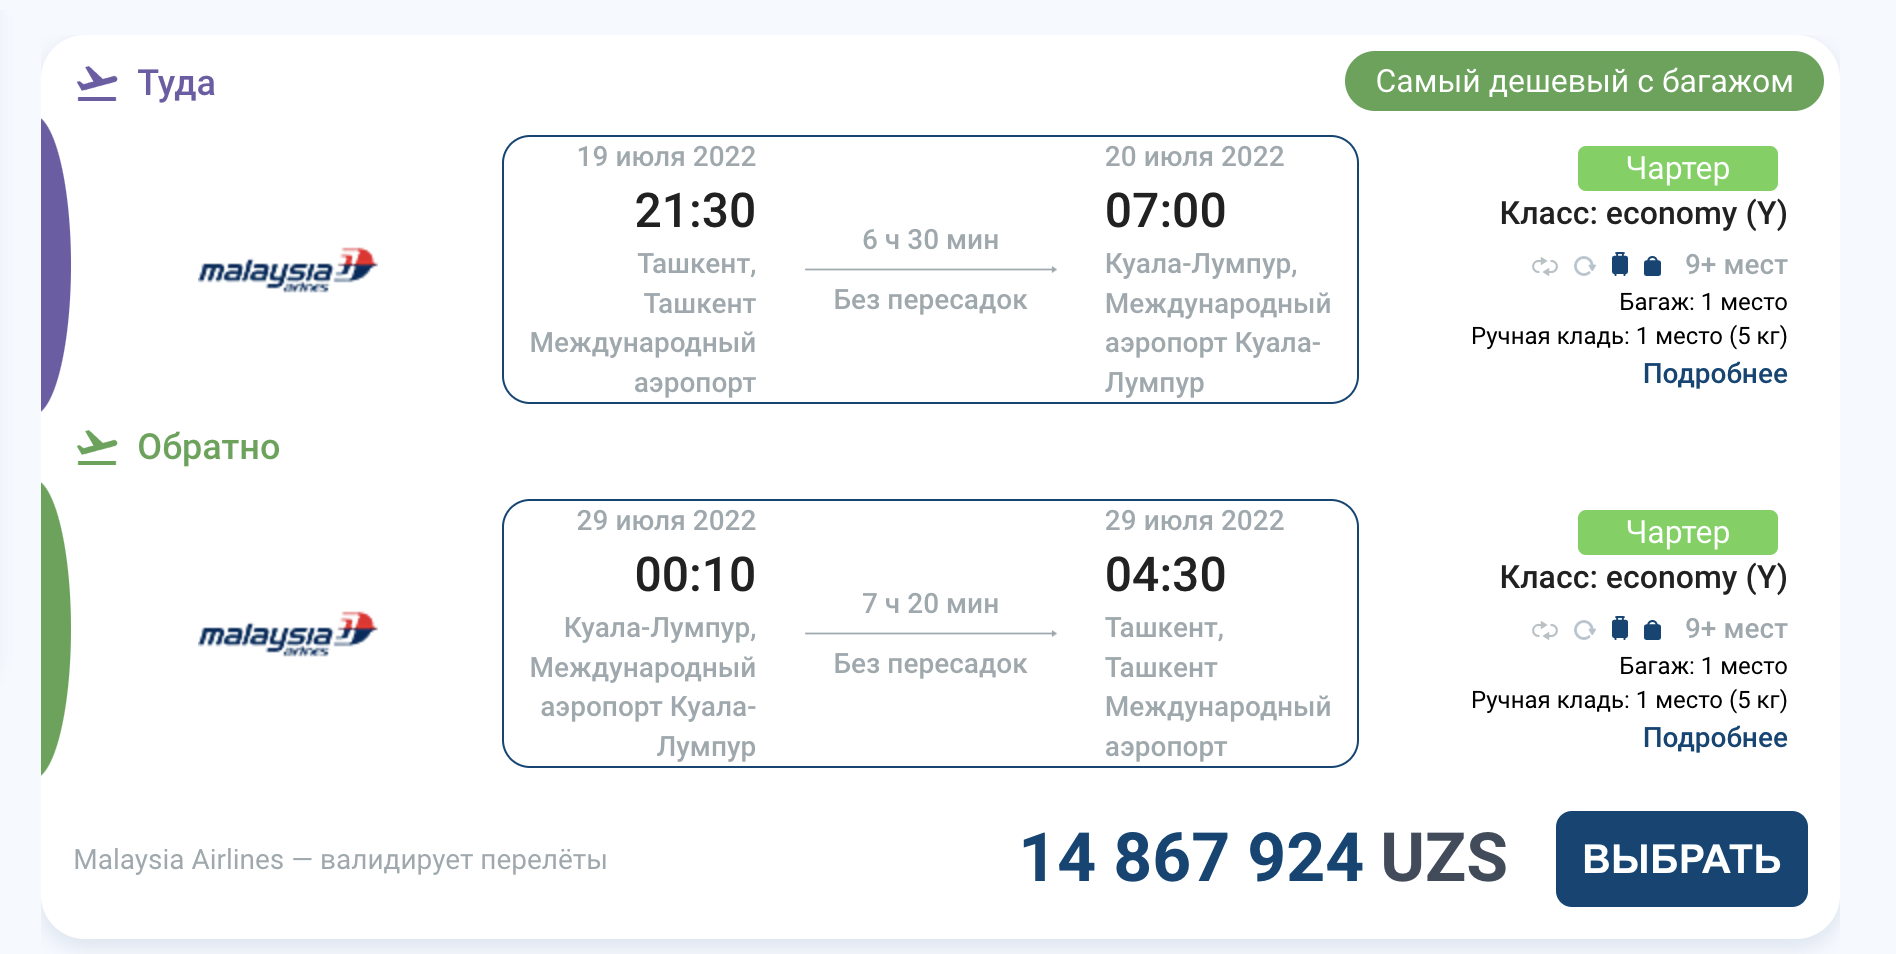 Москва наманган авиабилеты цена прямые рейсы дешево